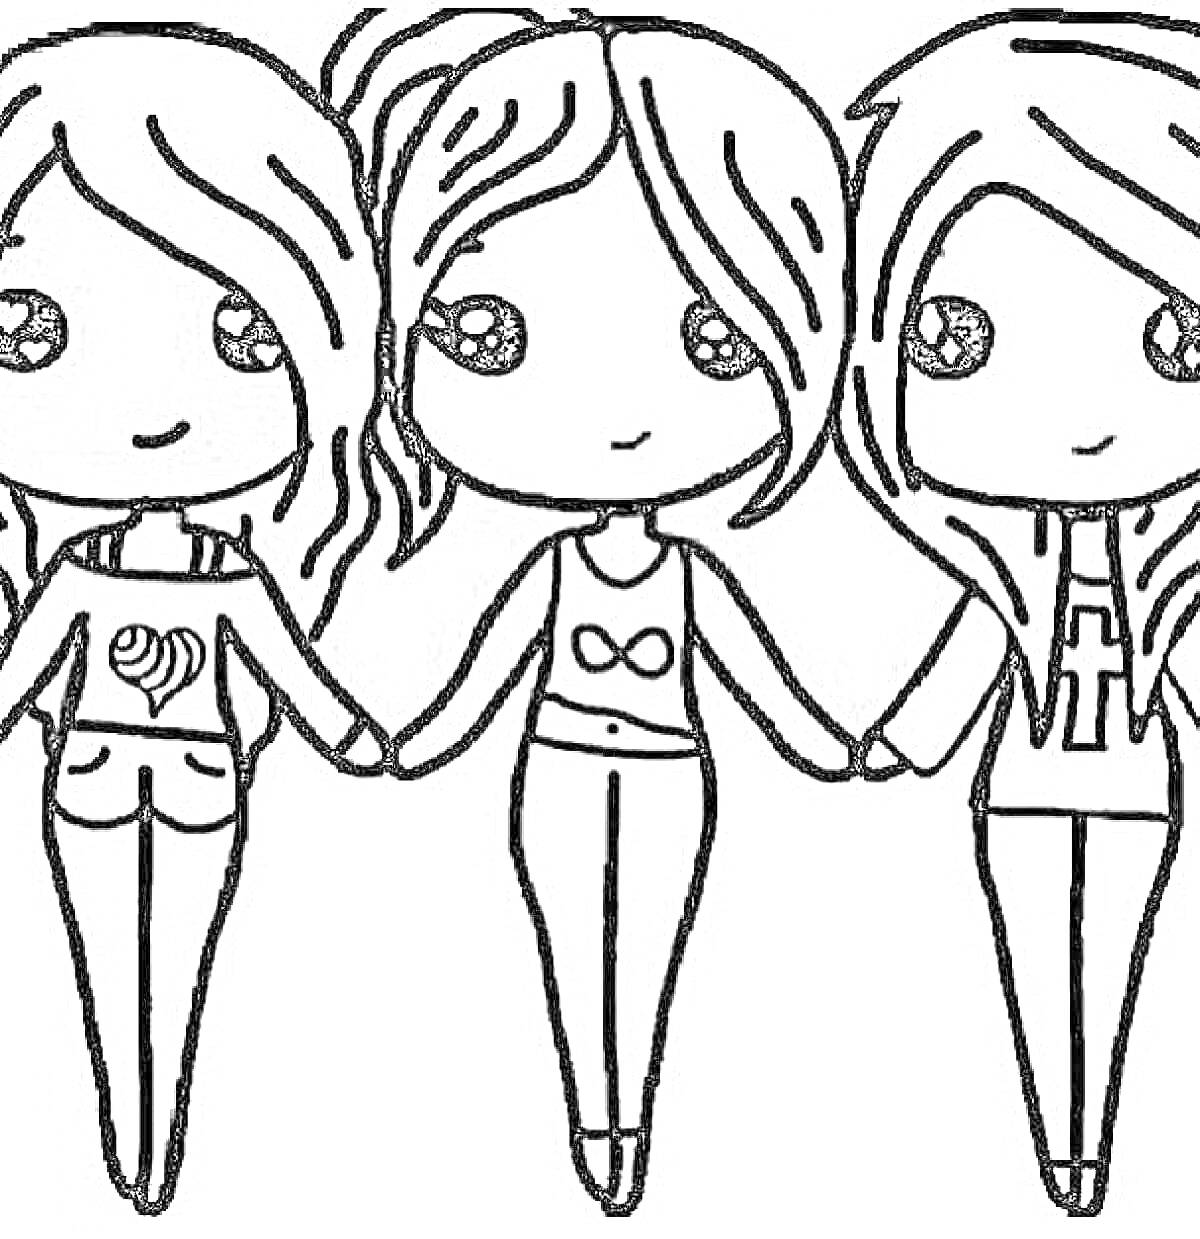 Раскраска Три подружки с длинными волосами, держатся за руки, каждая в футболке с разным символом (улитка, знак бесконечности, крест)